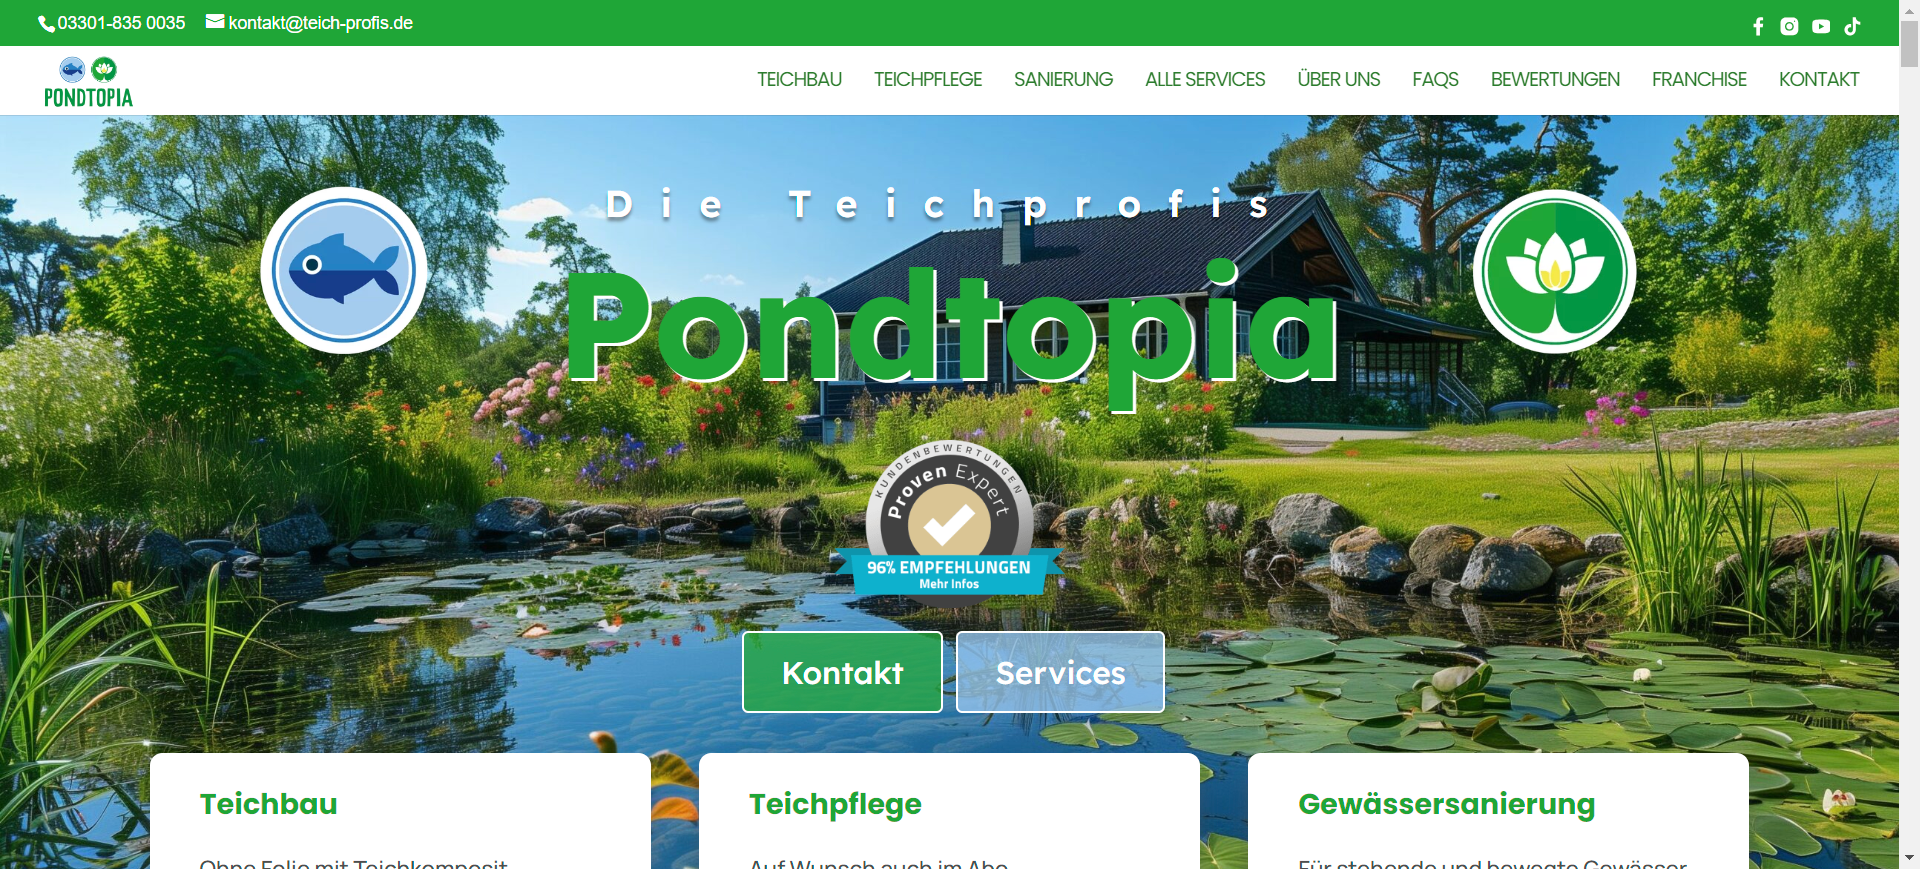 Webdesign Pondtopia Die Teichprofis Teichbau Teichpflege und Gewaessersanierung